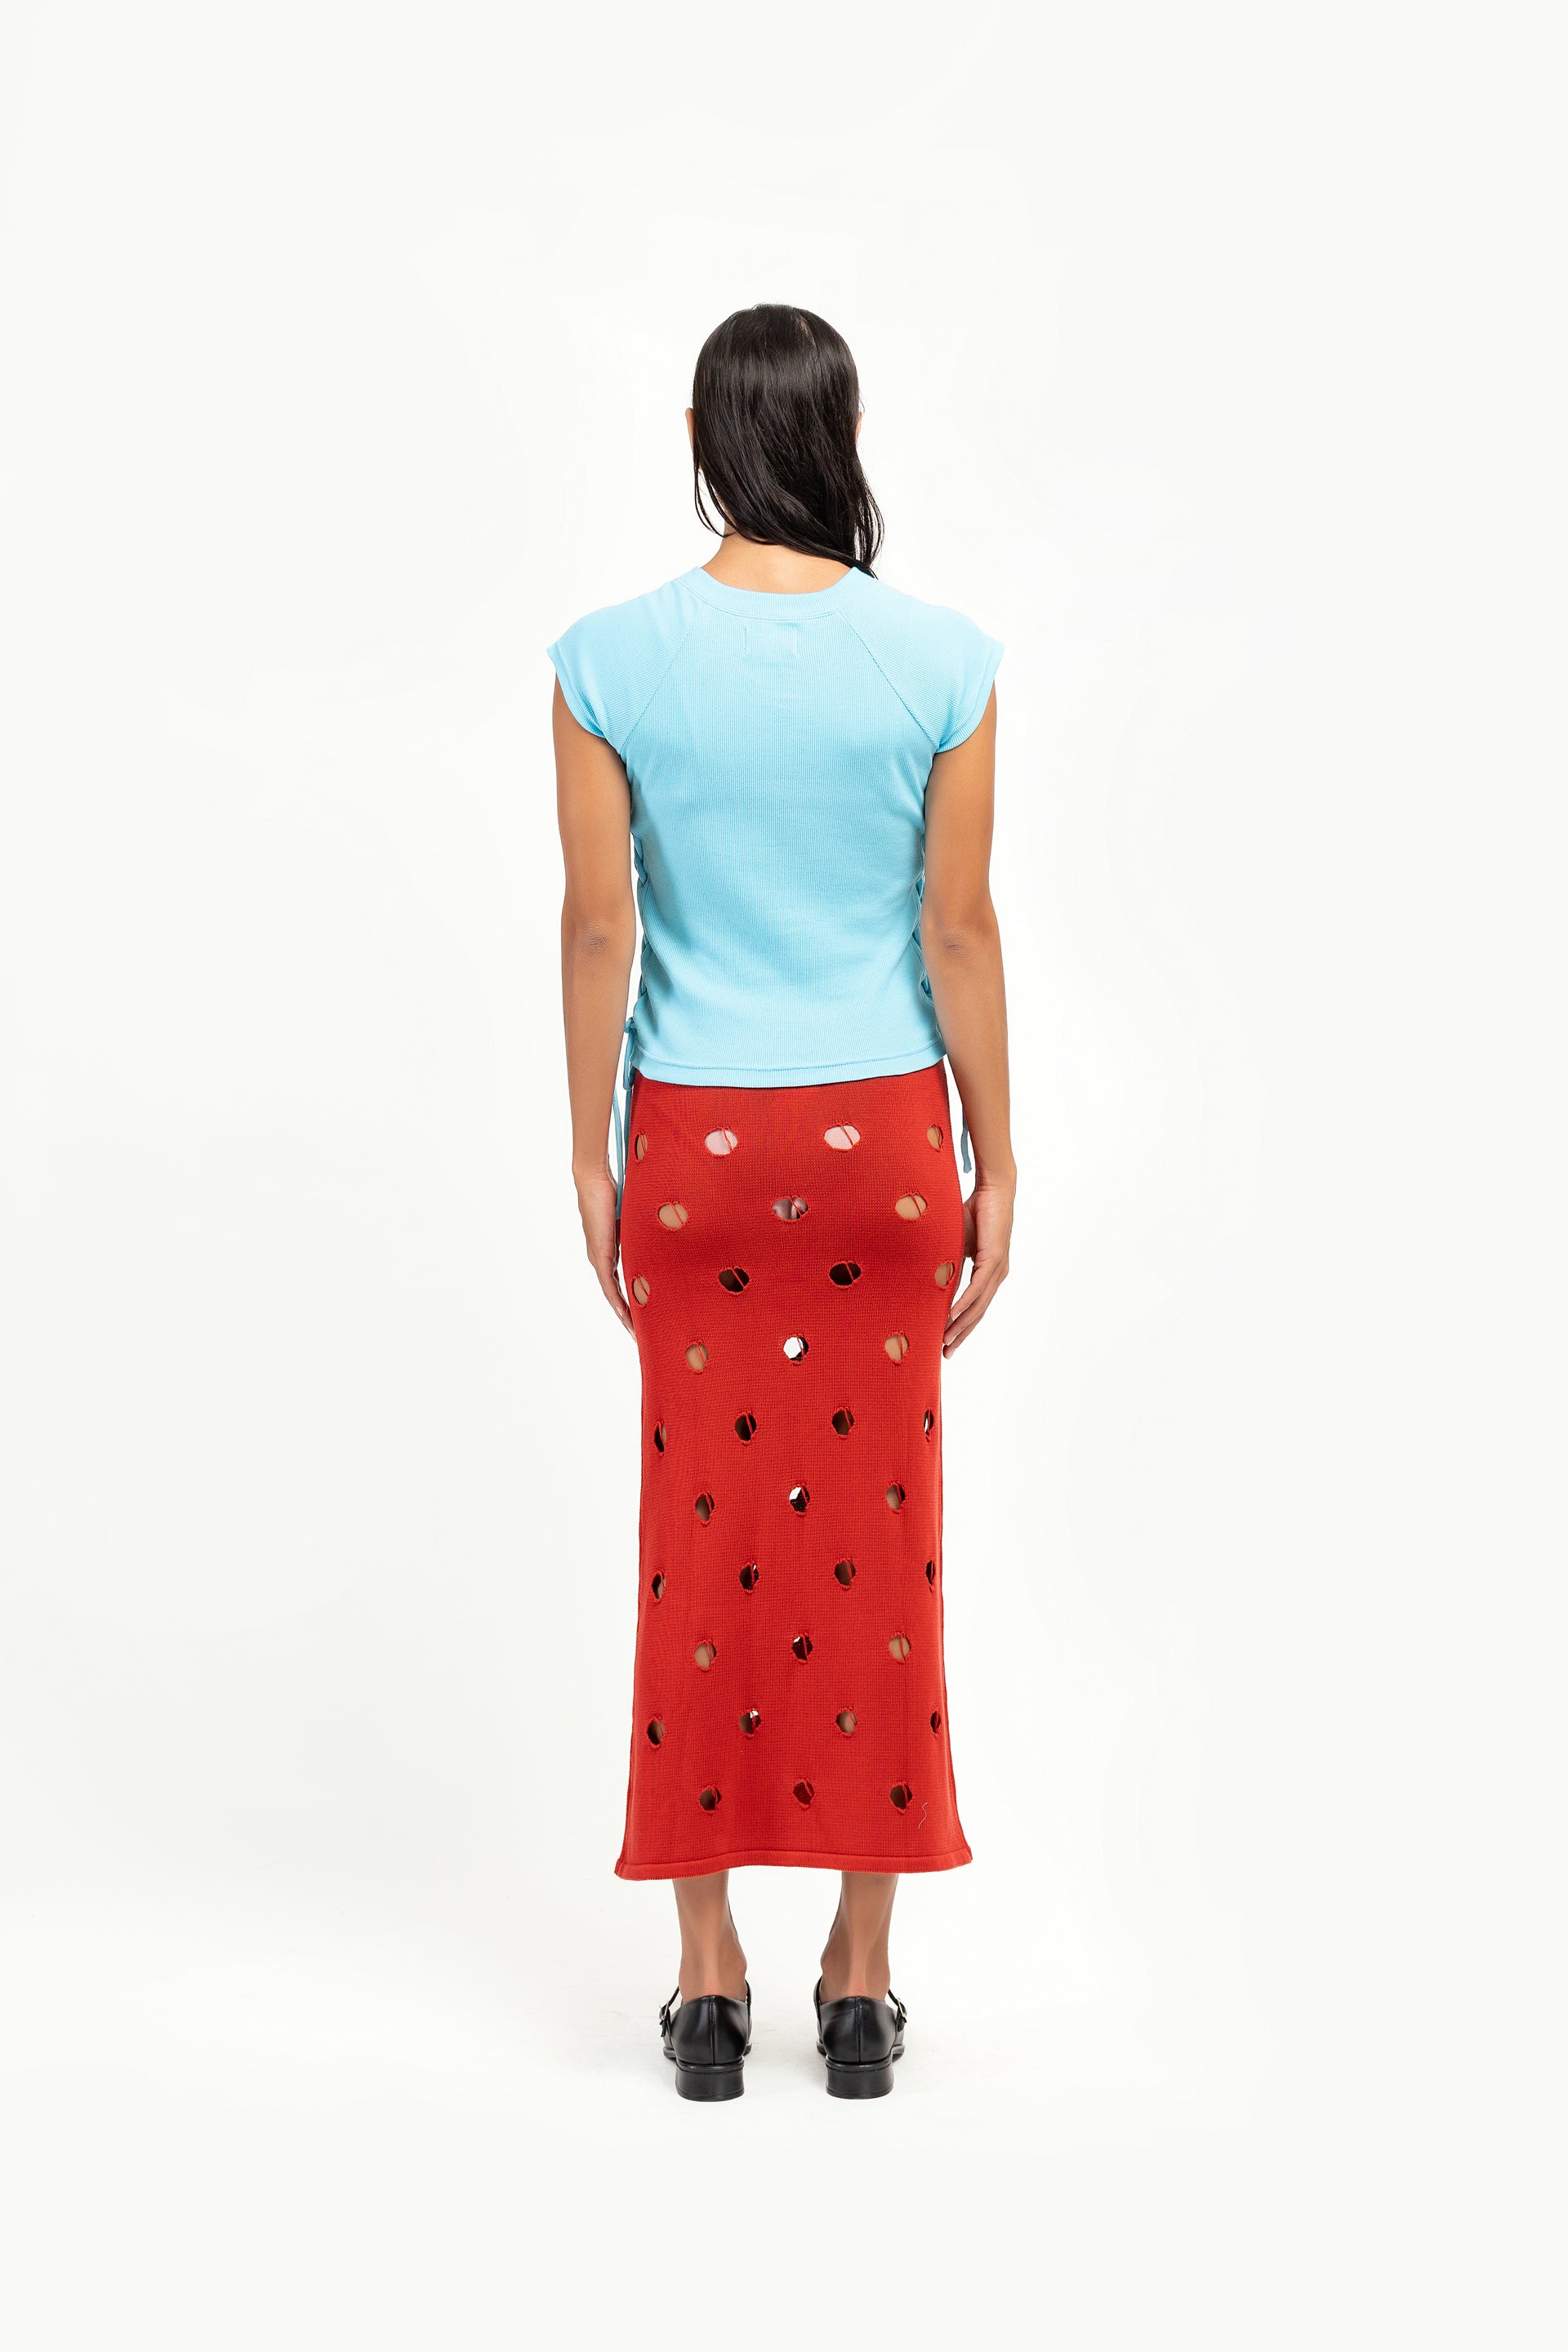 Scarlet Polka Dot Knit Skirt